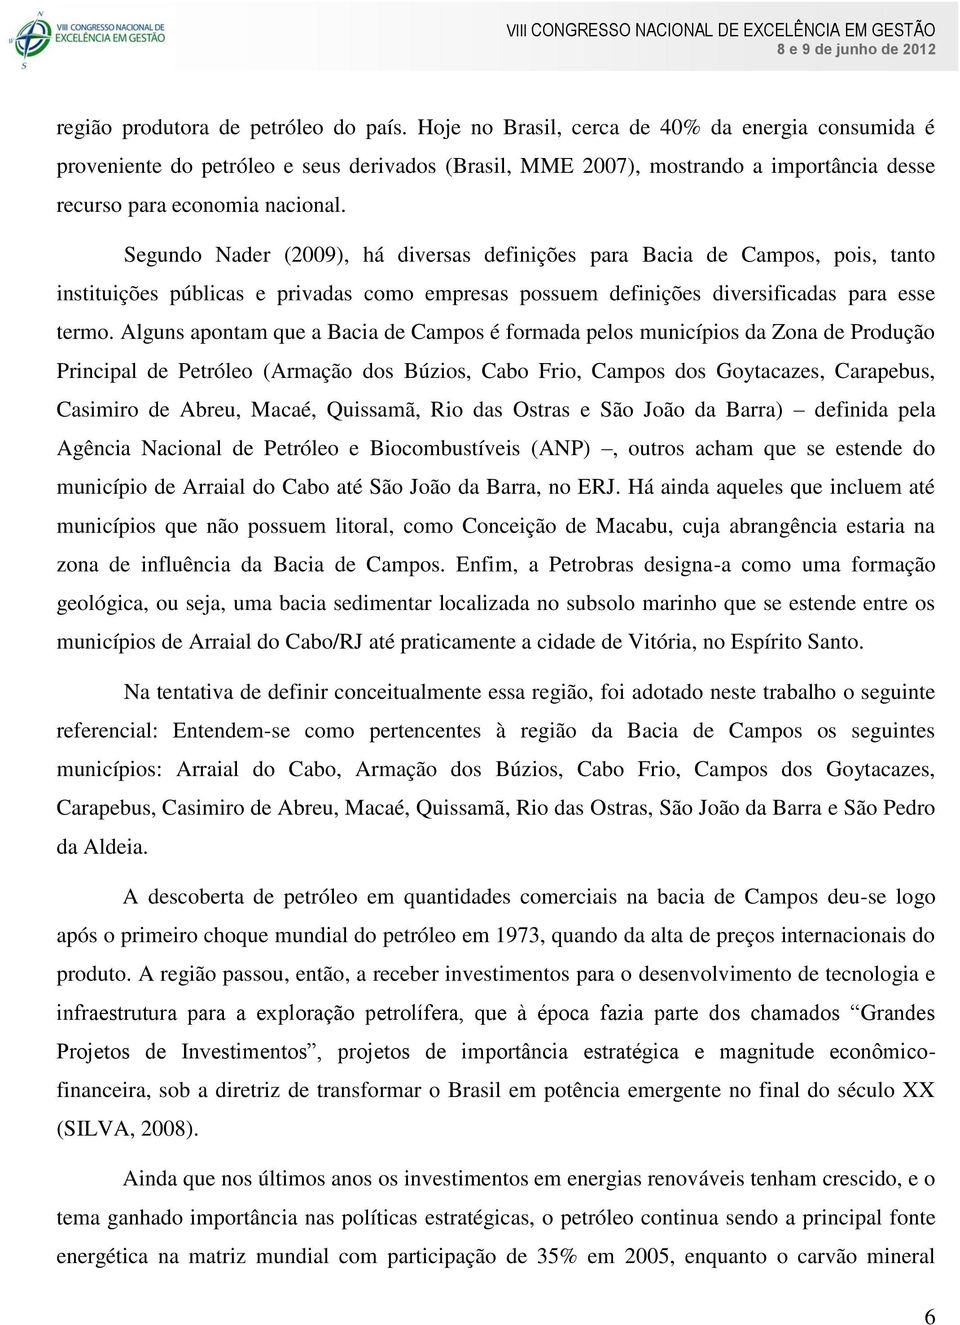 Segundo Nader (2009), há diversas definições para Bacia de Campos, pois, tanto instituições públicas e privadas como empresas possuem definições diversificadas para esse termo.